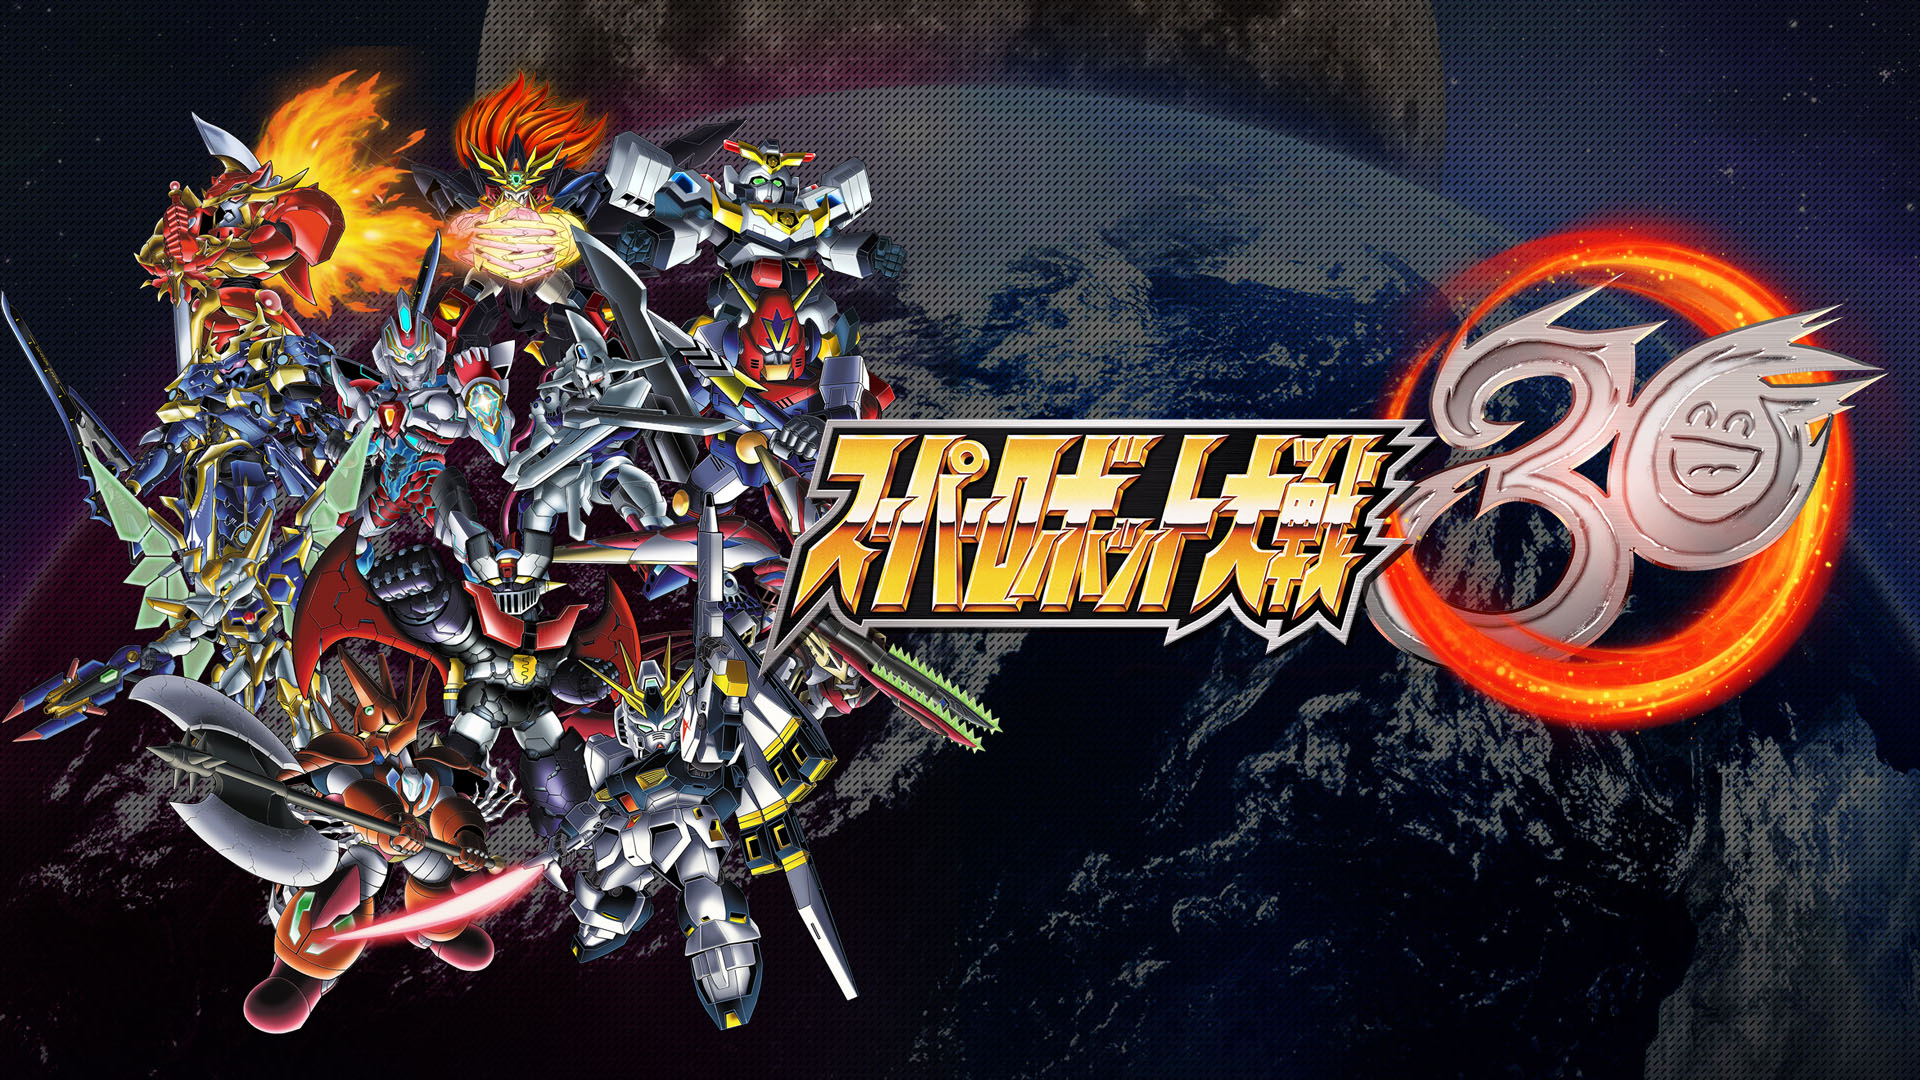 Super Robot Wars 30 word op 28 Oktober in Japan en Asië bekendgestel